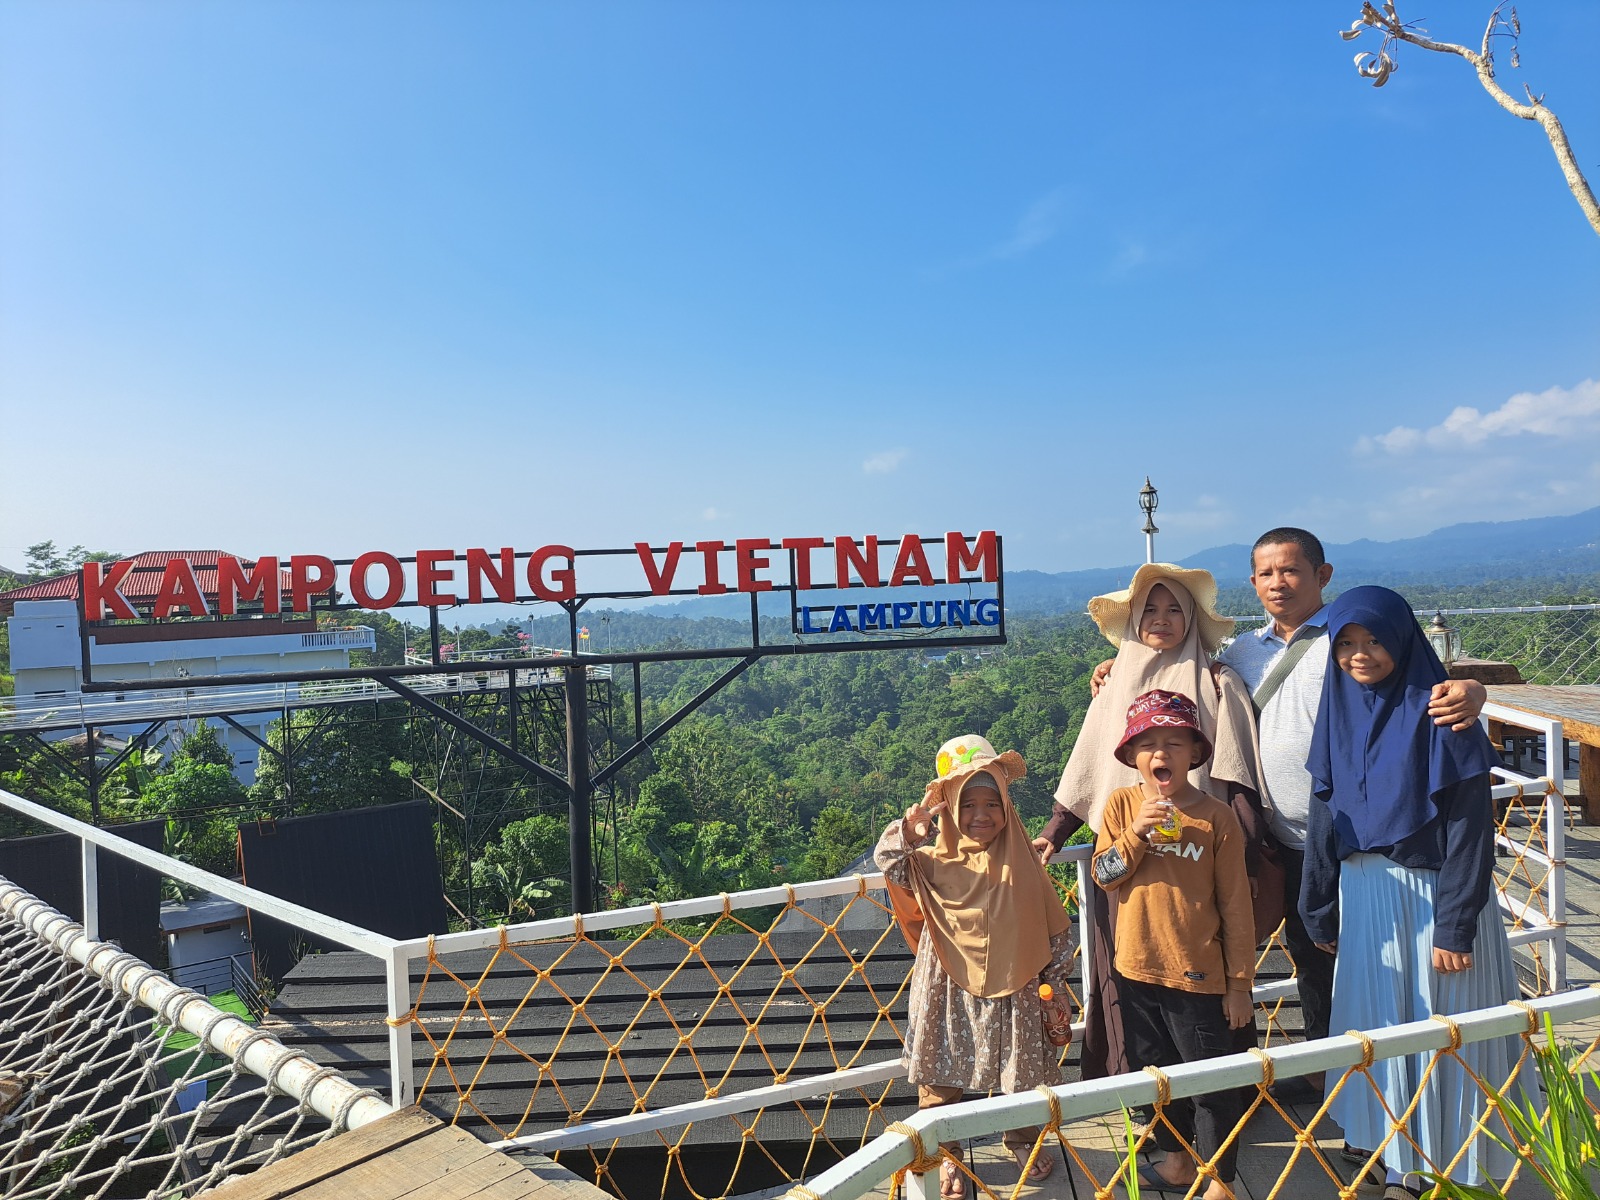 Bukan Sepi Pengunjung, Alasan Tak Berizin Wisata Kampung Vietnam Ditutup